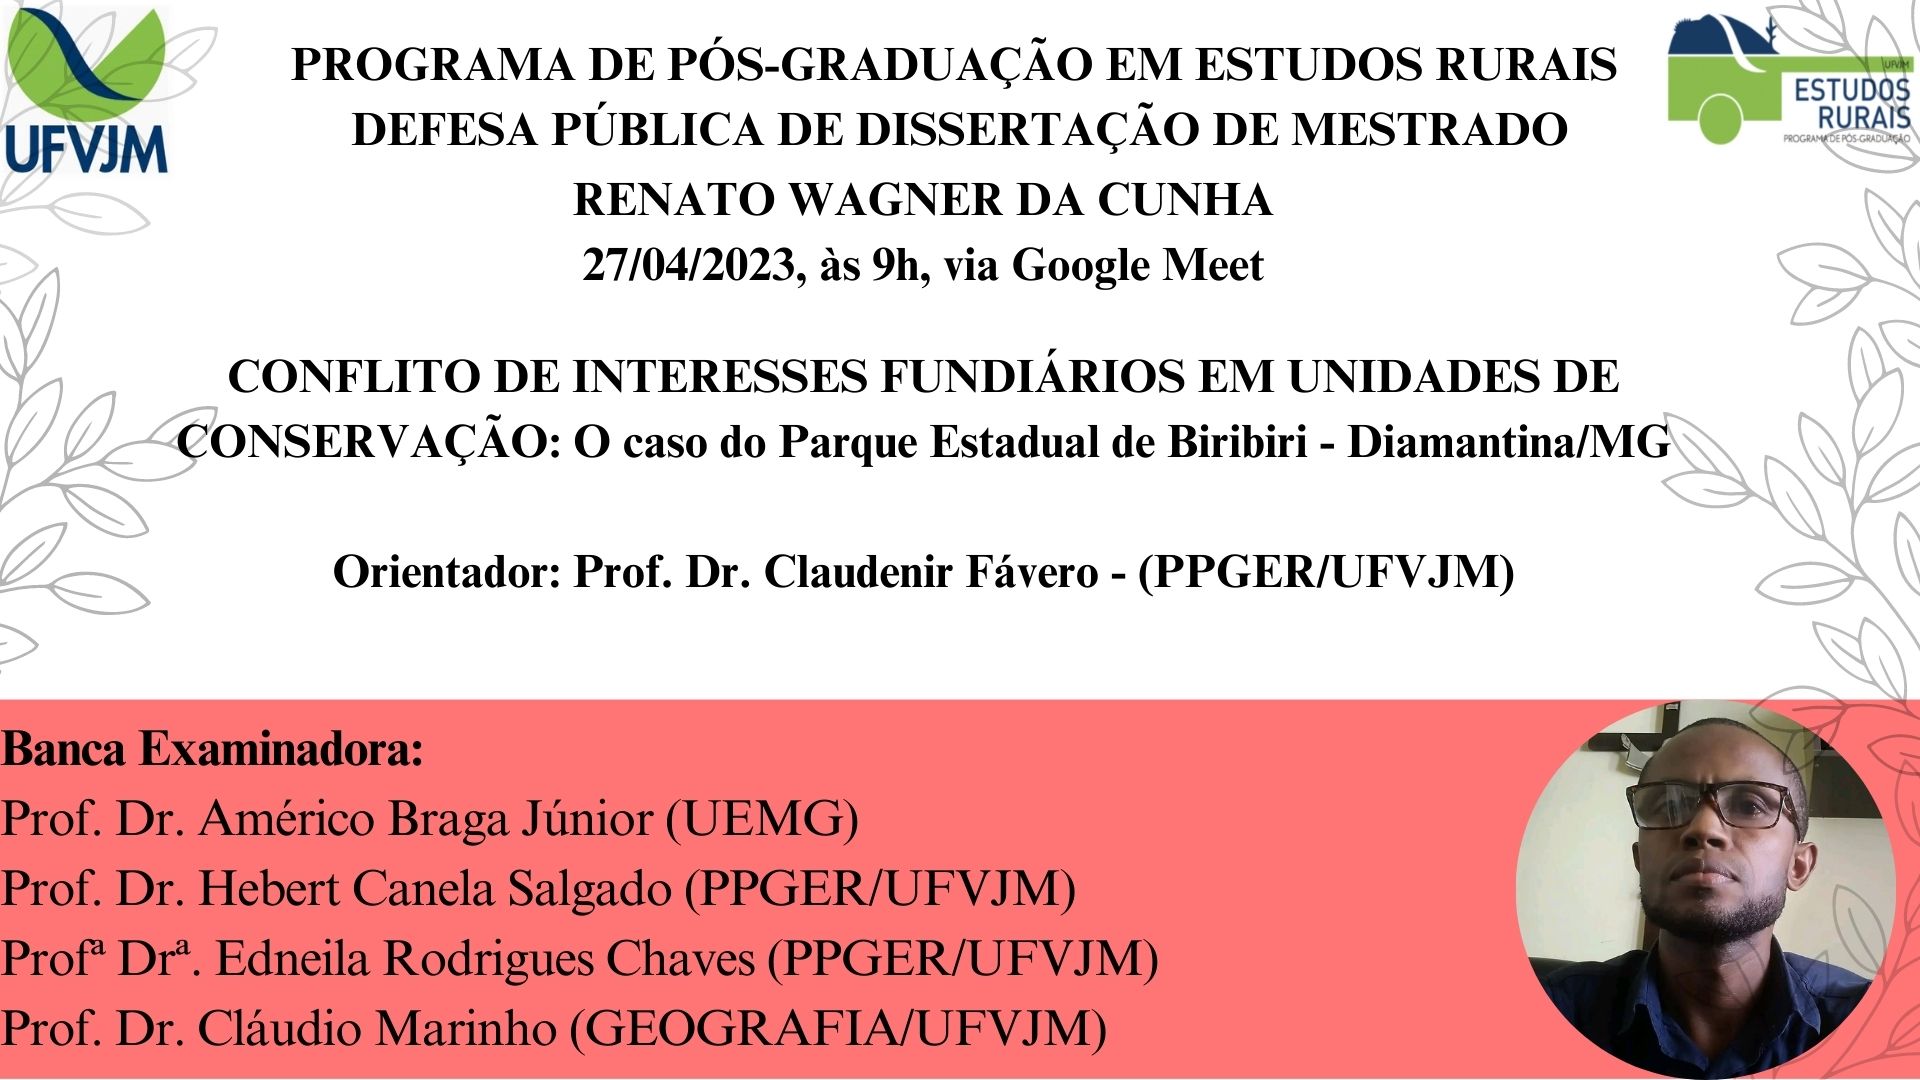 UFMG - Universidade Federal de Minas Gerais - Escola x família: o que cabe  a cada um na discussão sobre gênero?